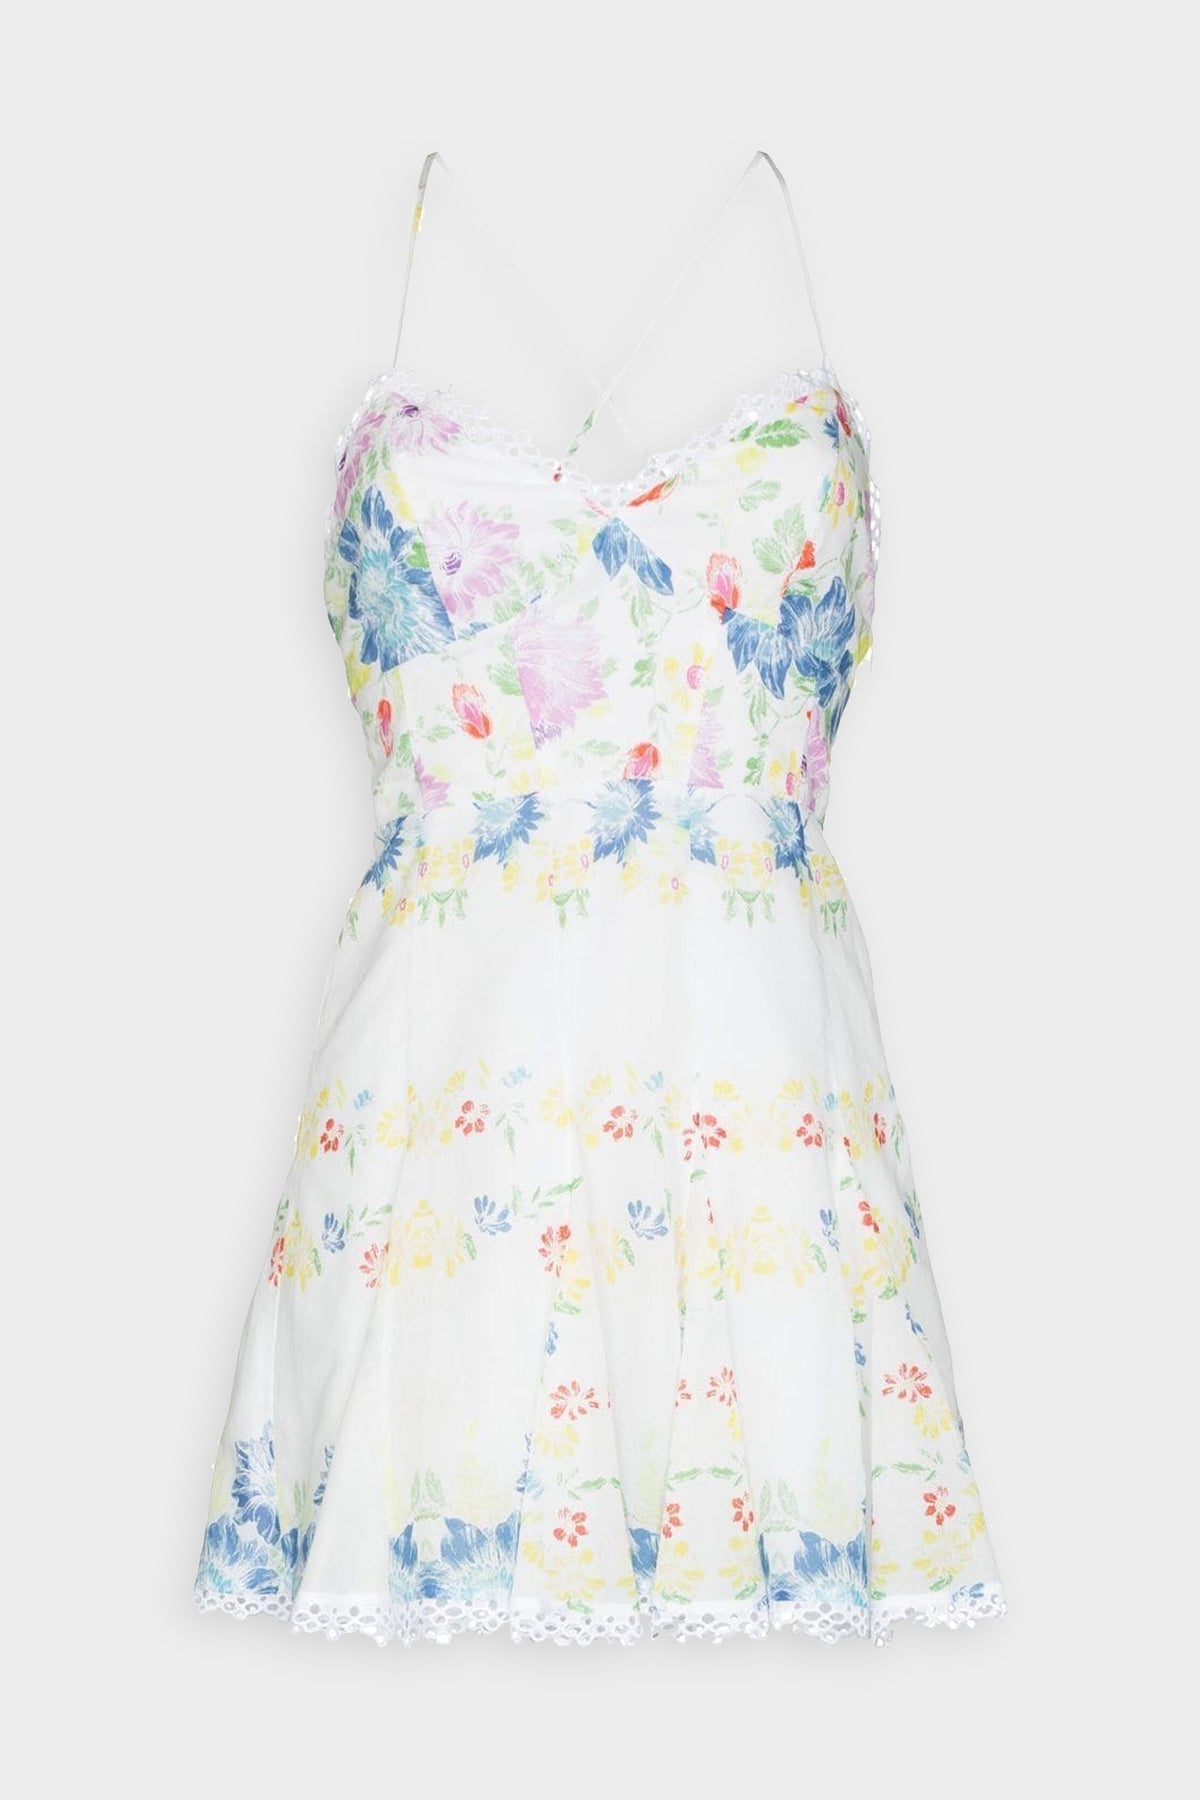 Cania Short Dress in Garden White Print - shop-olivia.com